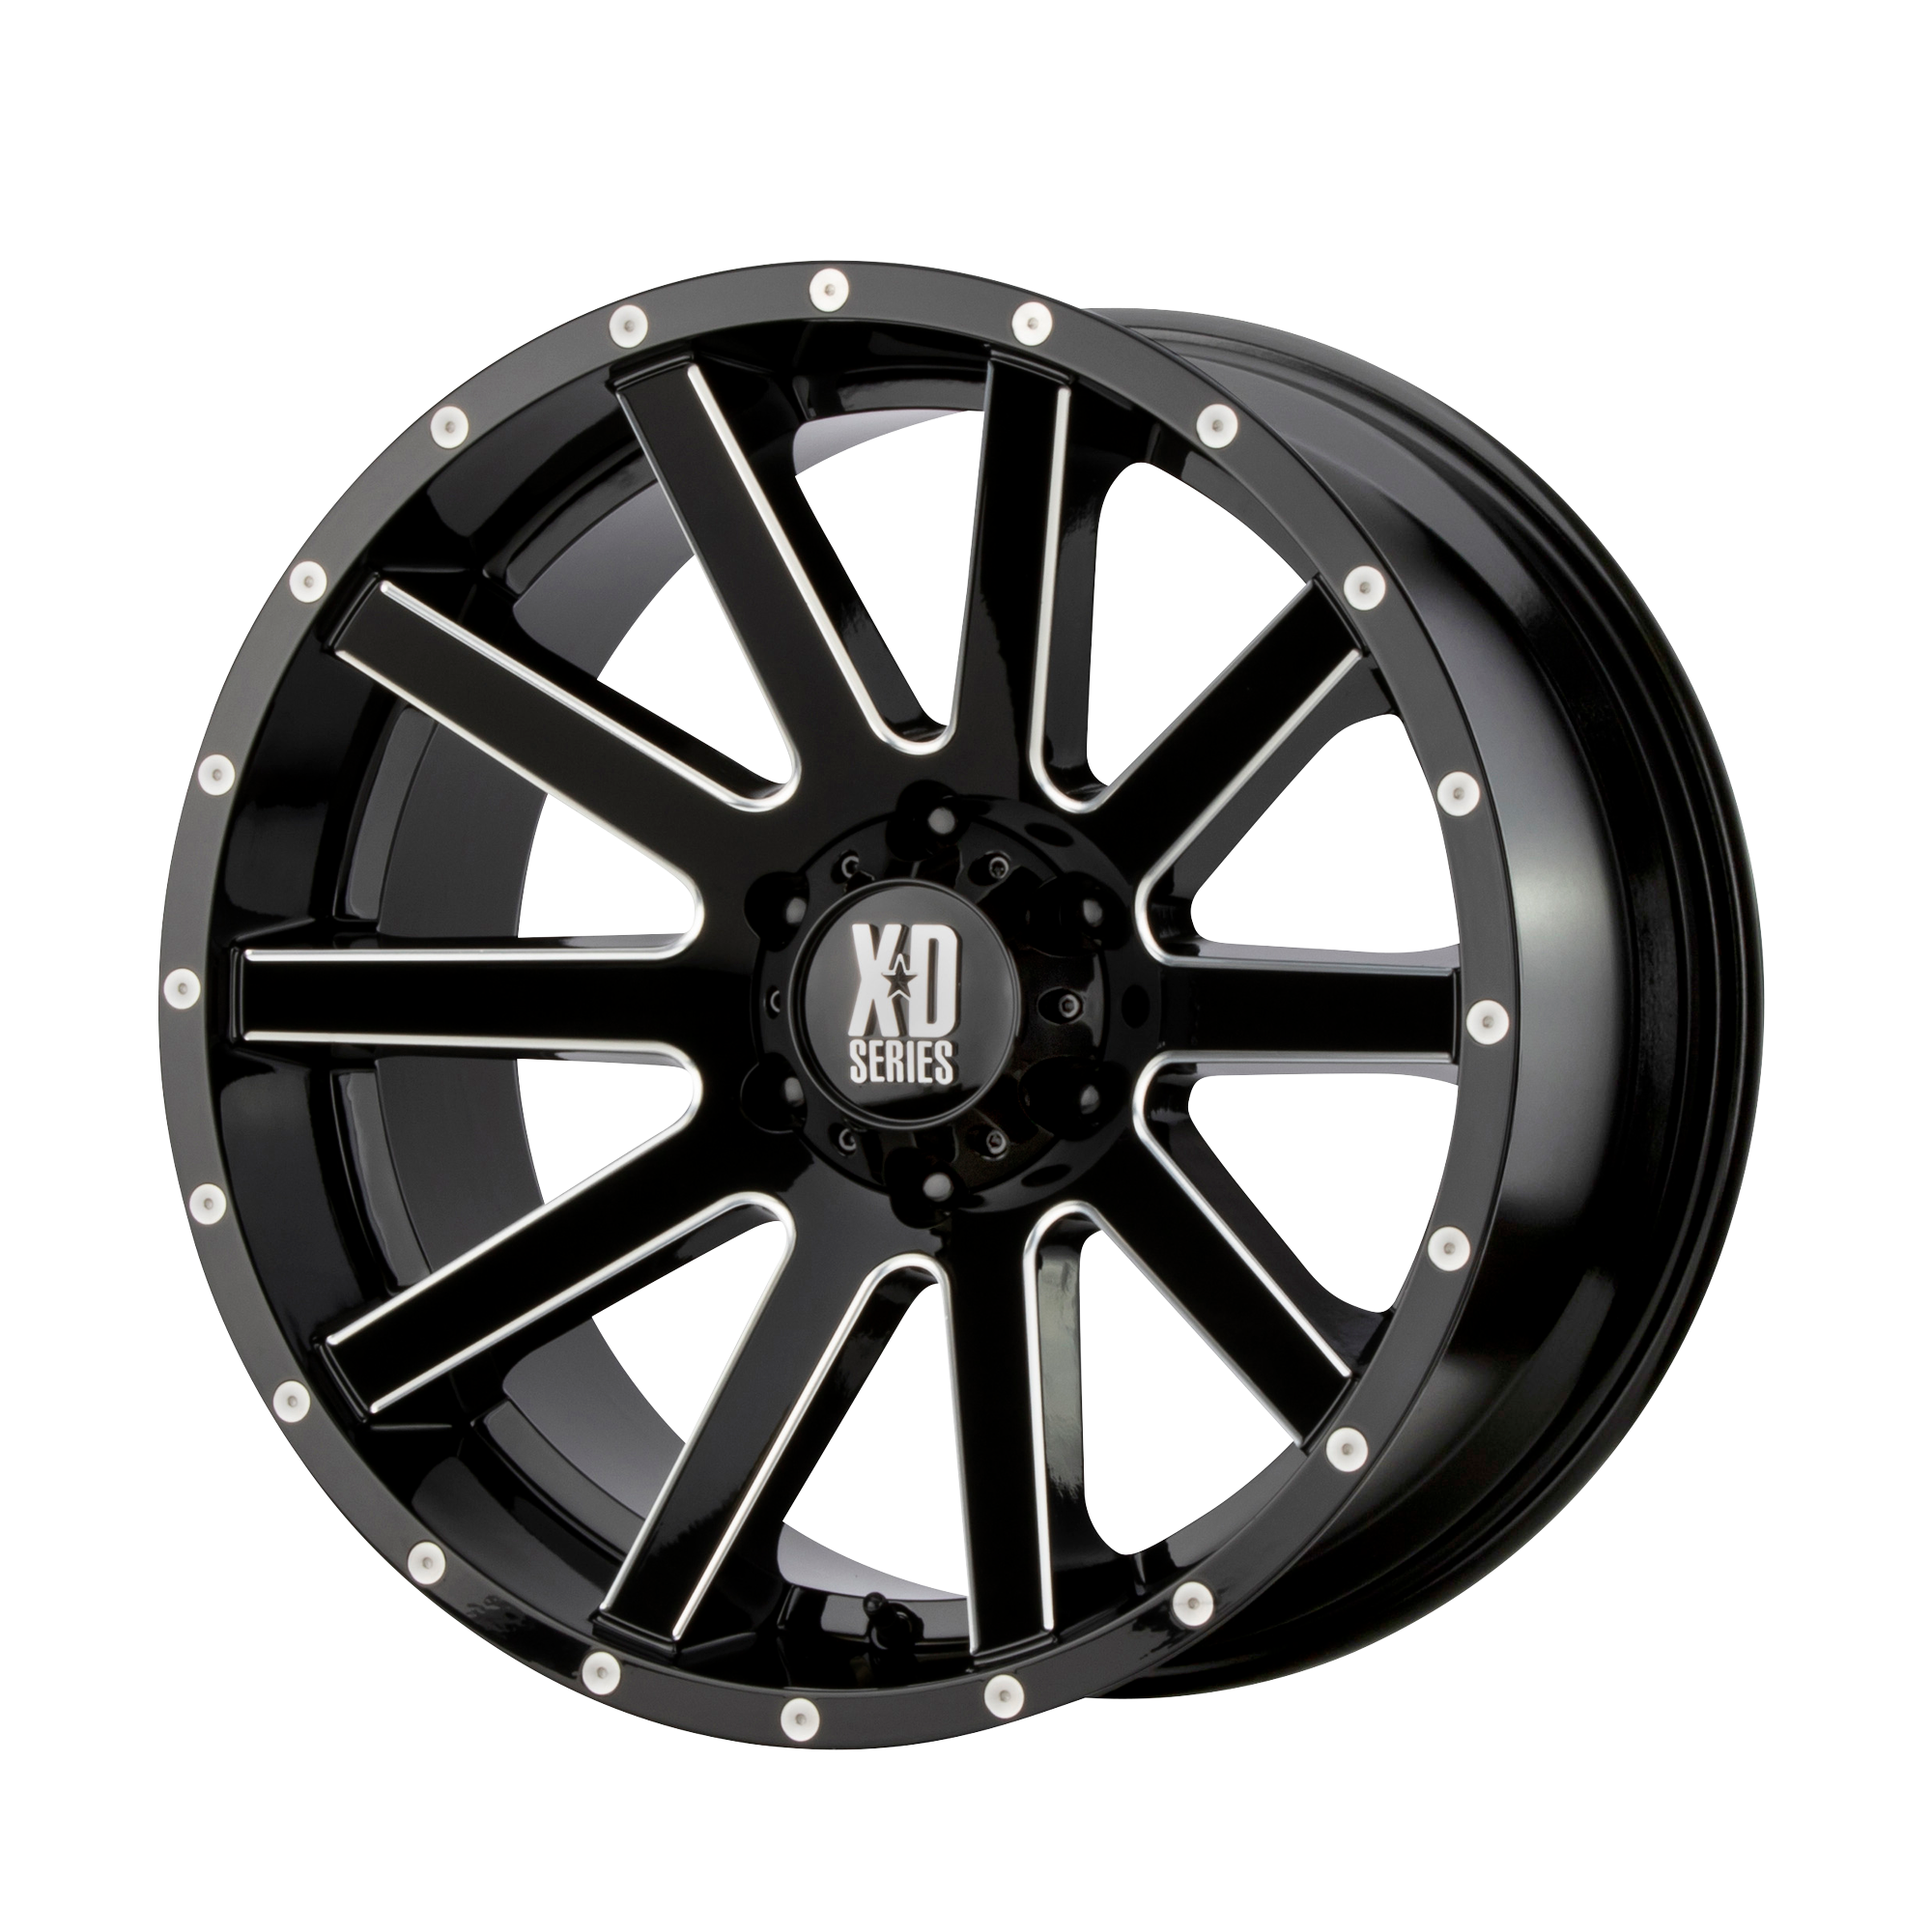 XD Series XD818 HEIST Gloss Black Milled